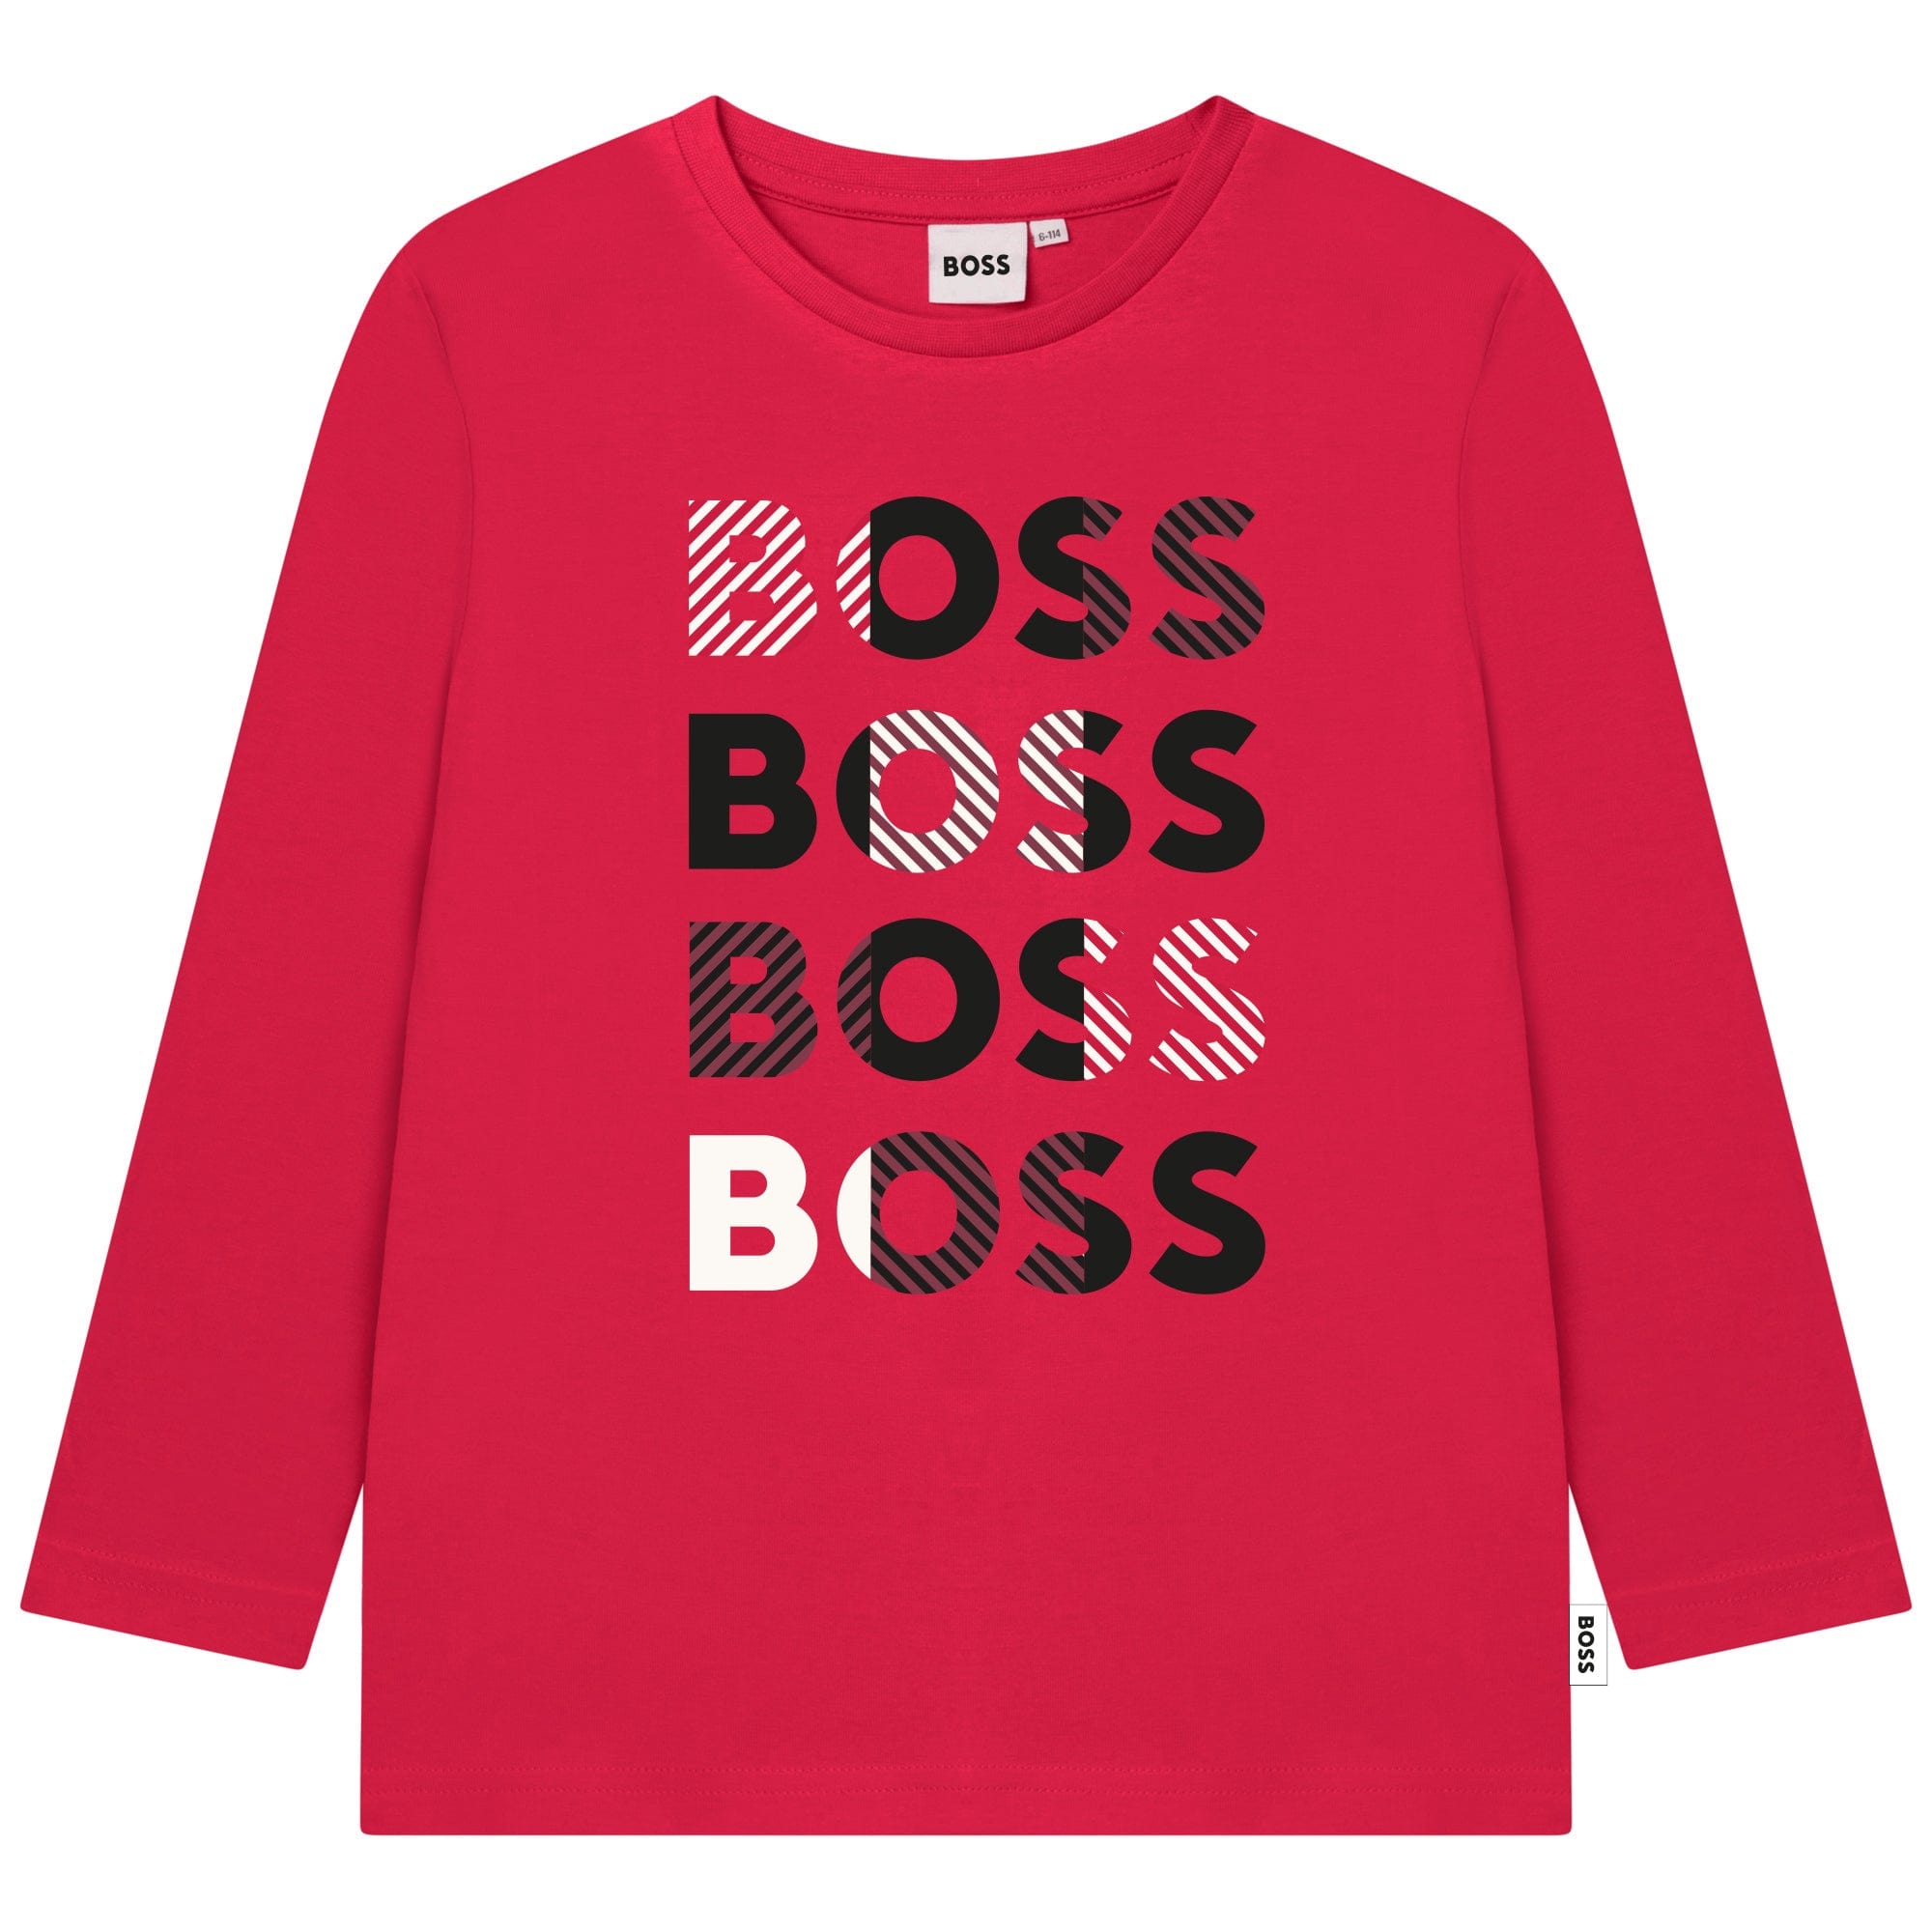 HUGO BOSS - Long Sleeve Logo T Shirt -  Red